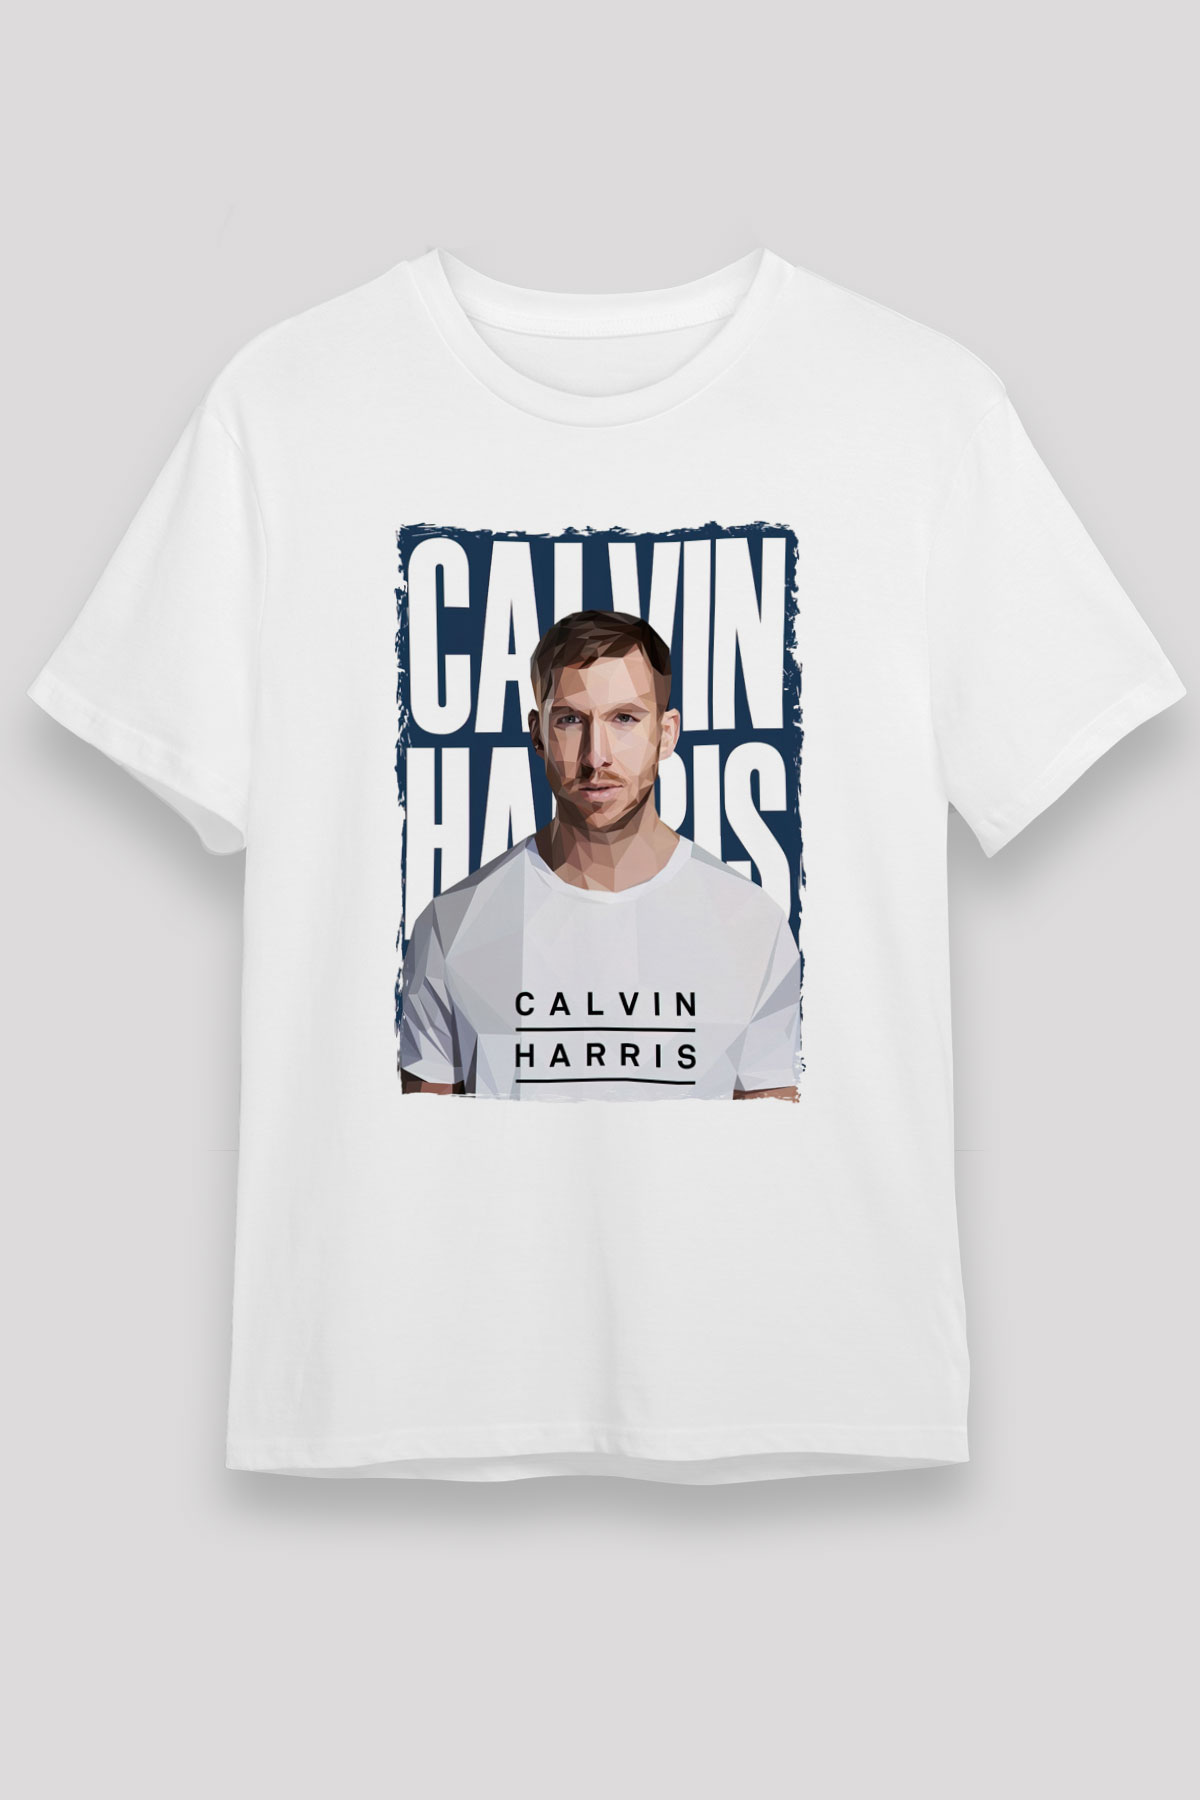 Calvin Harris T shirt,Music Tshirt 01/